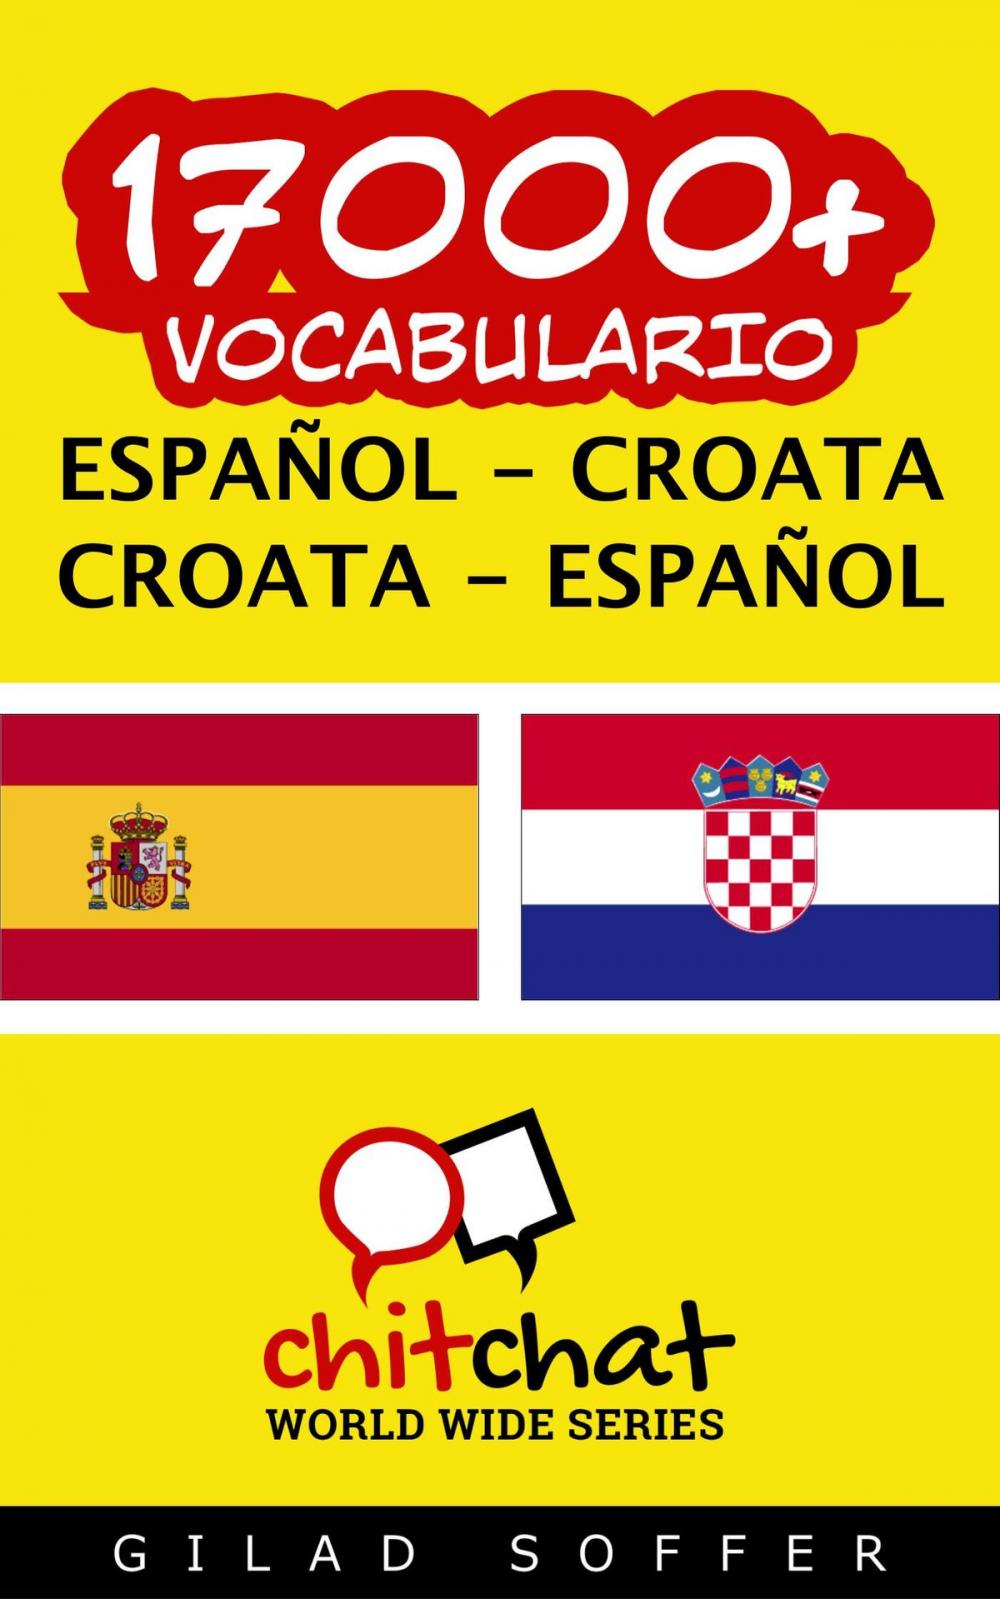 Big bigCover of 17000+ vocabulario español - croata